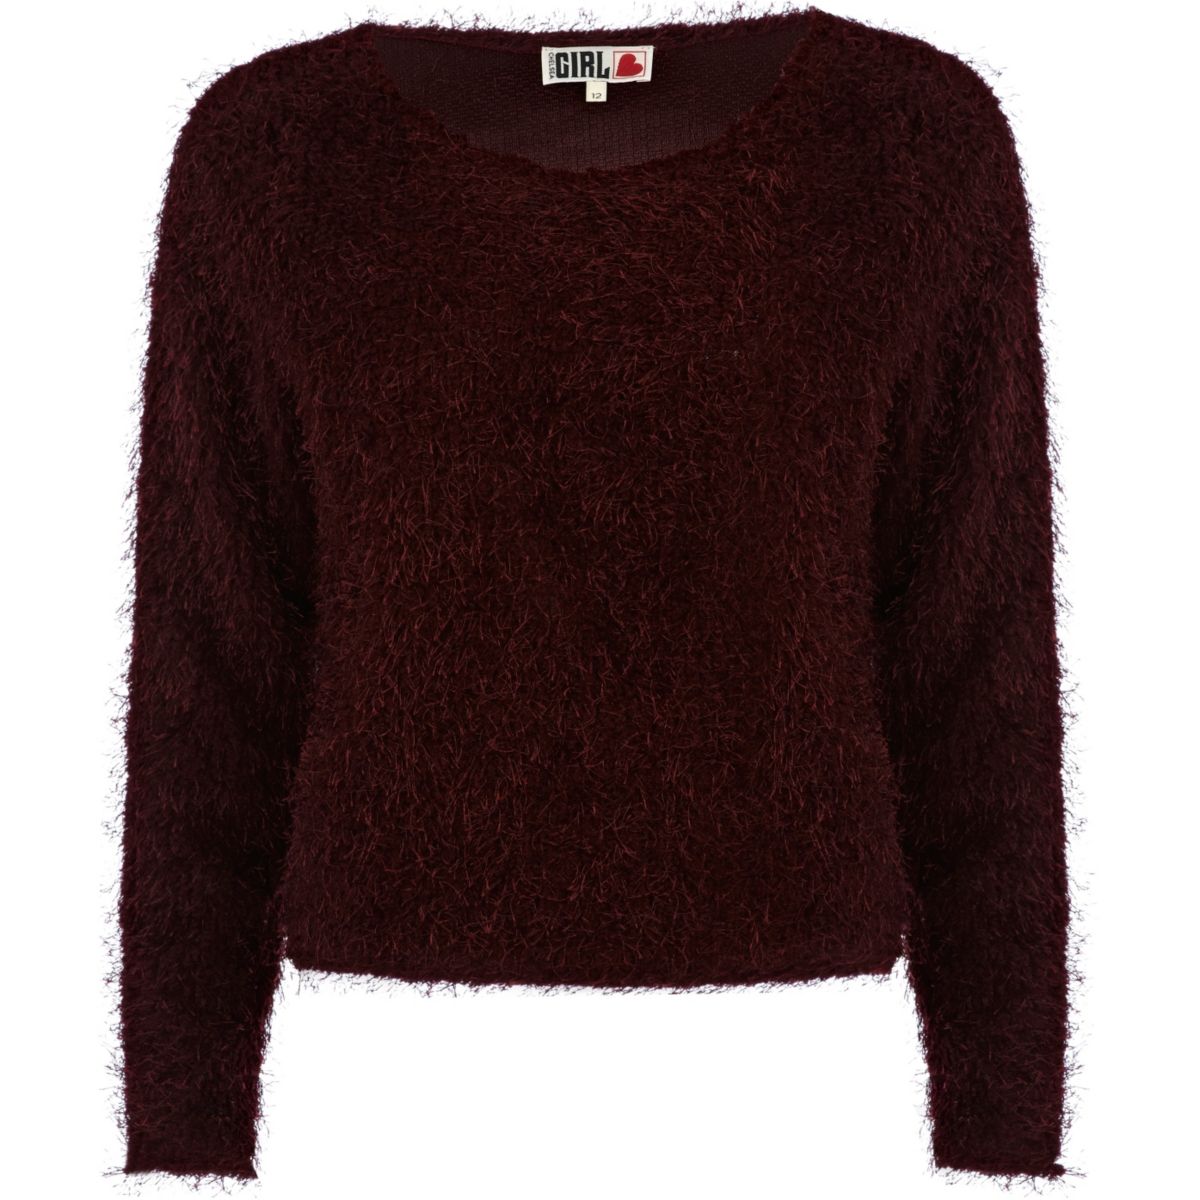 Dark red fluffy Chelsea Girl sweater - Knitwear - Sale - women